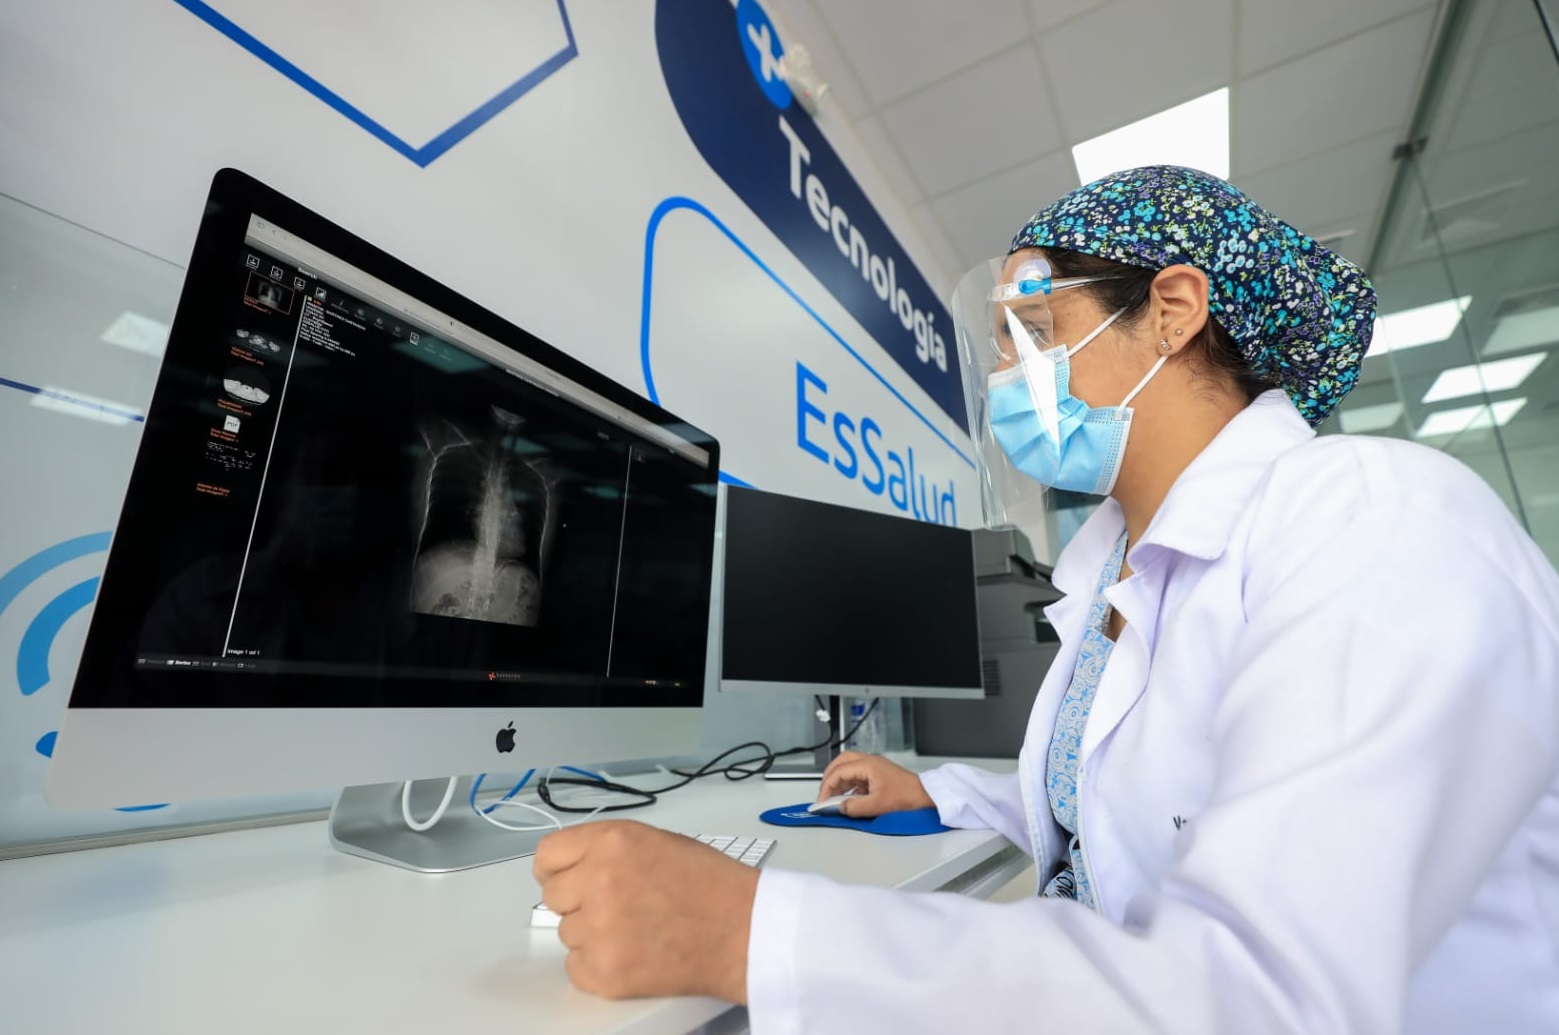 Essalud - Centro de Telemedicina de EsSalud Junín brindó cerca de 112 mil consultas virtuales desde su implementación